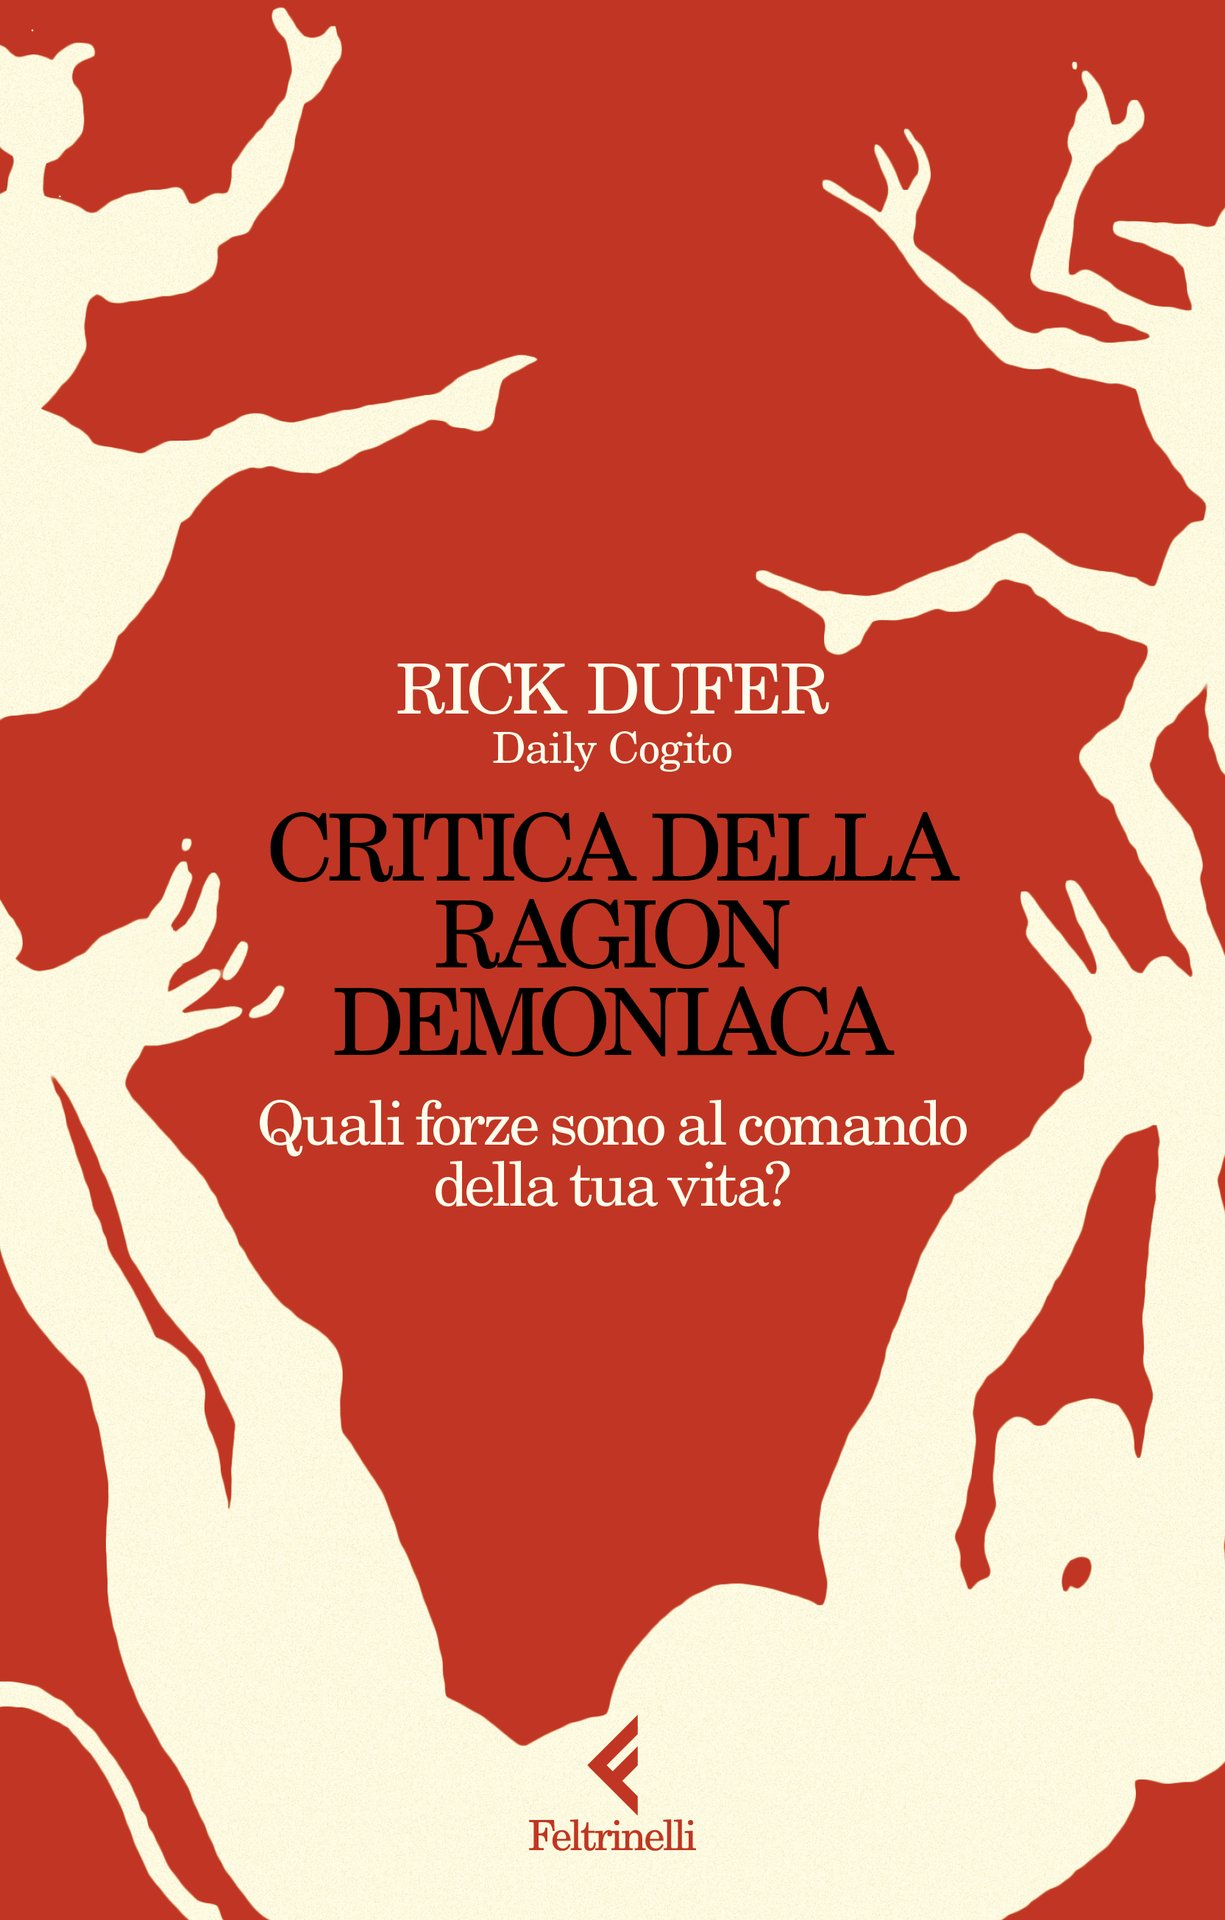 Rick DuFer presenta "Critica della ragion demoniaca"  a Milano, alla Feltrinelli di Viale Sabotino